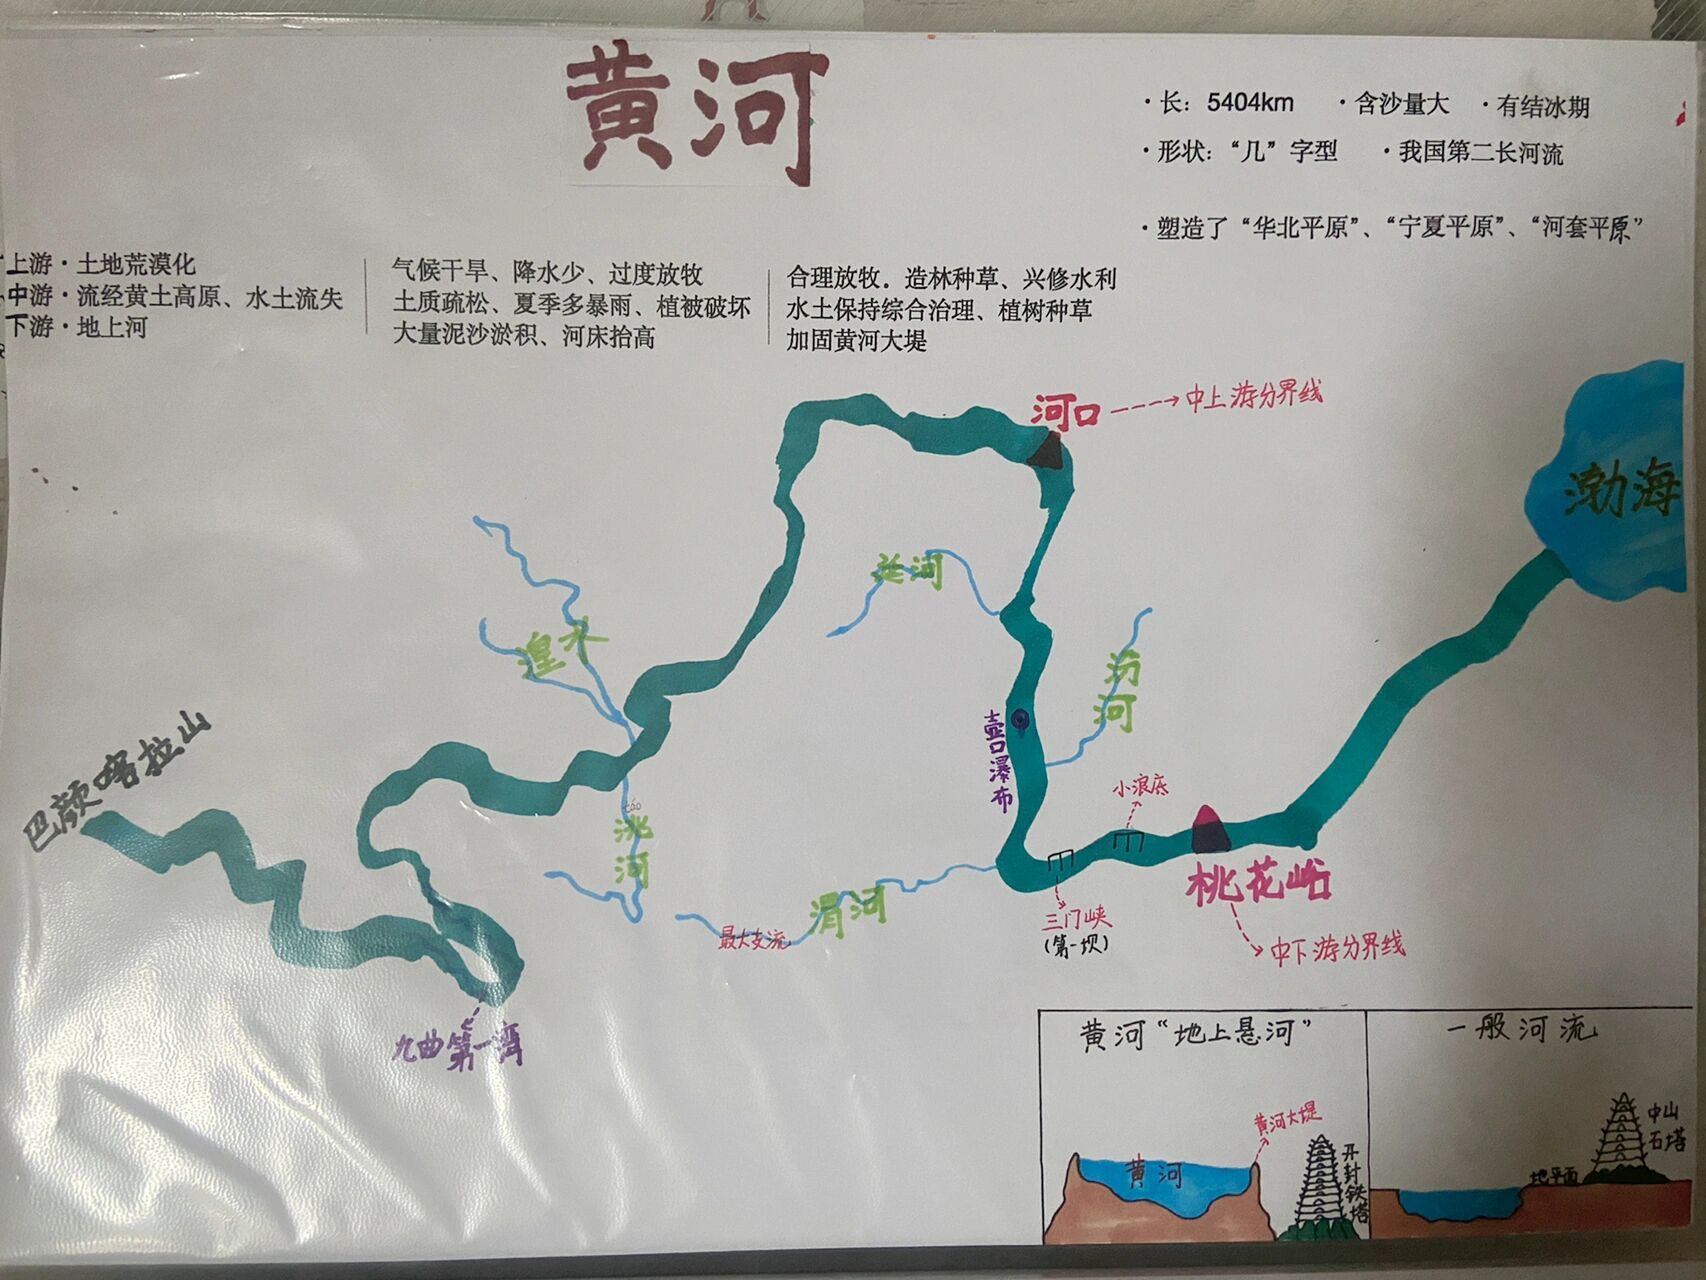 长江黄河走向示意图图片